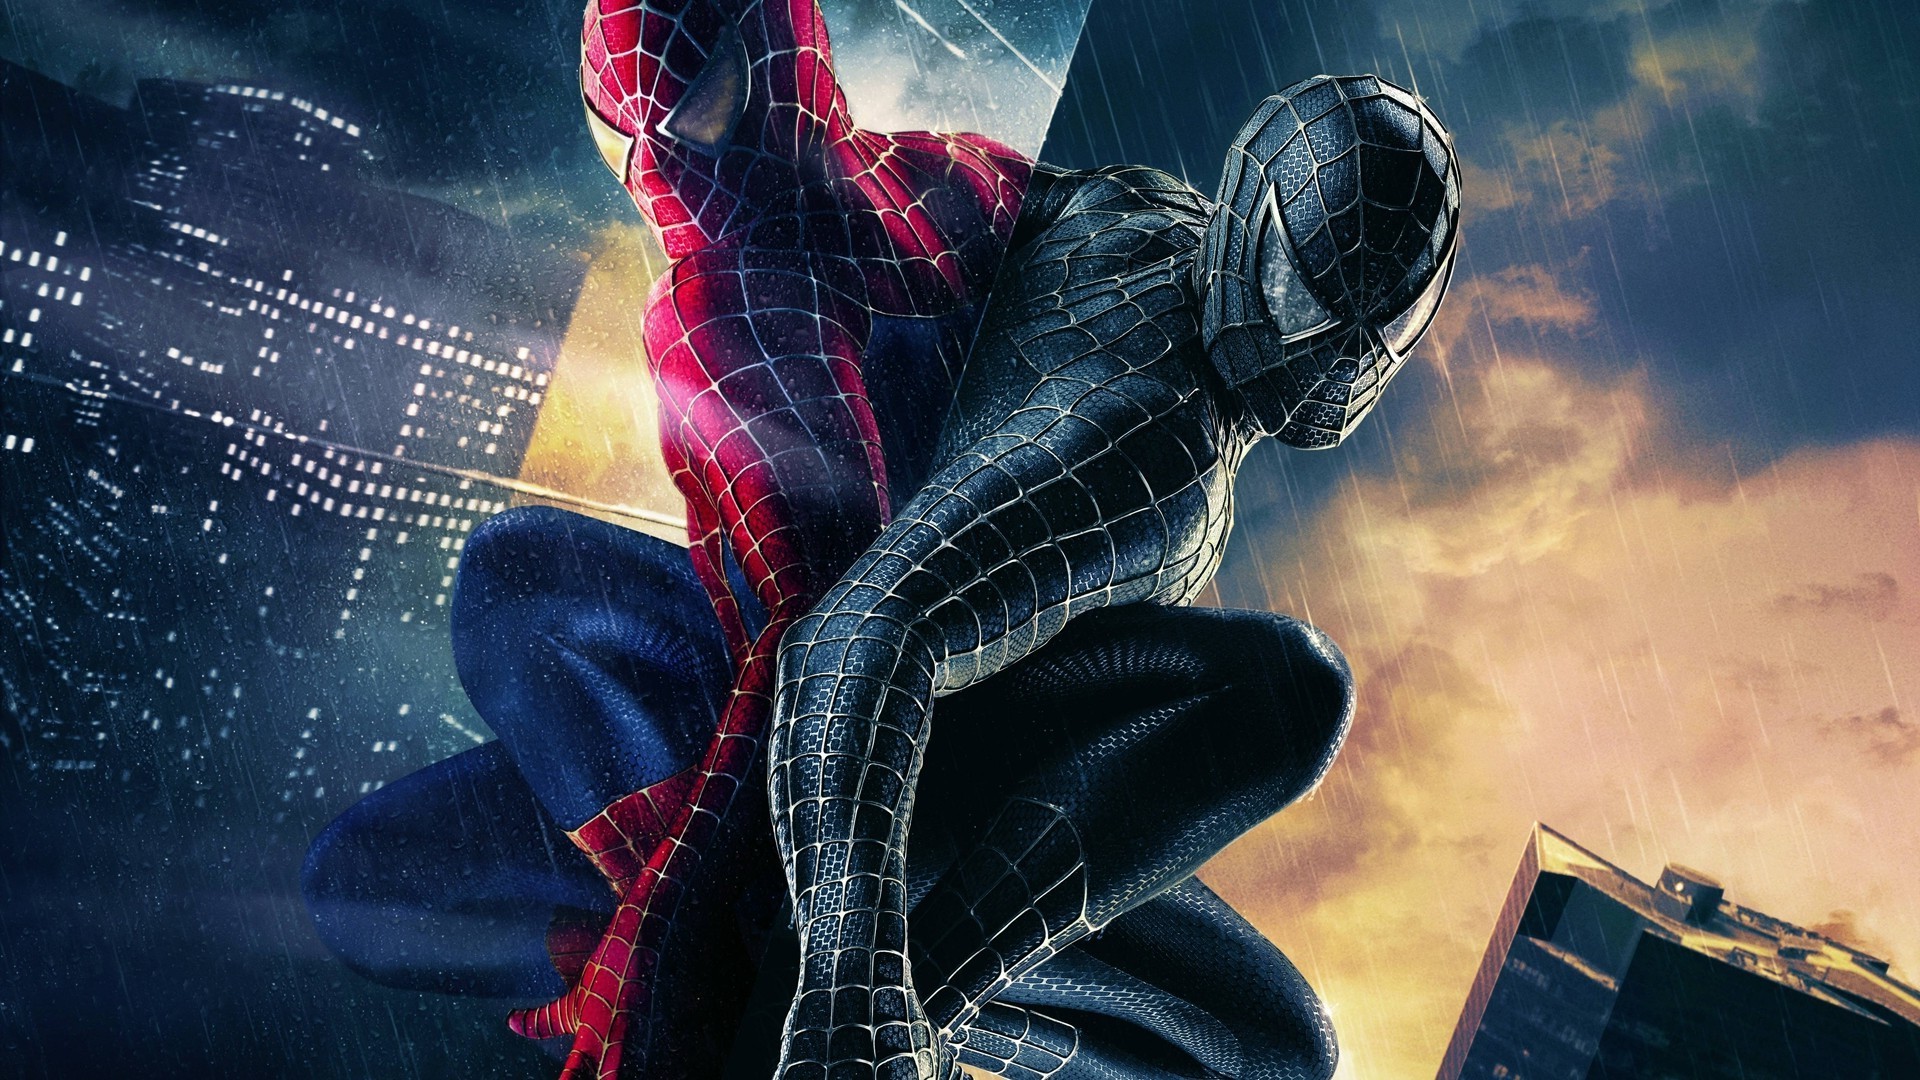 Cùng lên đường khám phá thế giới Spider Man với bộ sưu tập hình nền Spider Man 3 cho máy tính. Thông qua những hình ảnh đầy sức mạnh và dũng cảm, bạn sẽ được tận hưởng những phút giây thư giãn và đắm mình trong thế giới siêu anh hùng đầy kịch tính của Spider Man. Hãy tải ngay để có những trải nghiệm tuyệt vời trên màn hình của bạn.